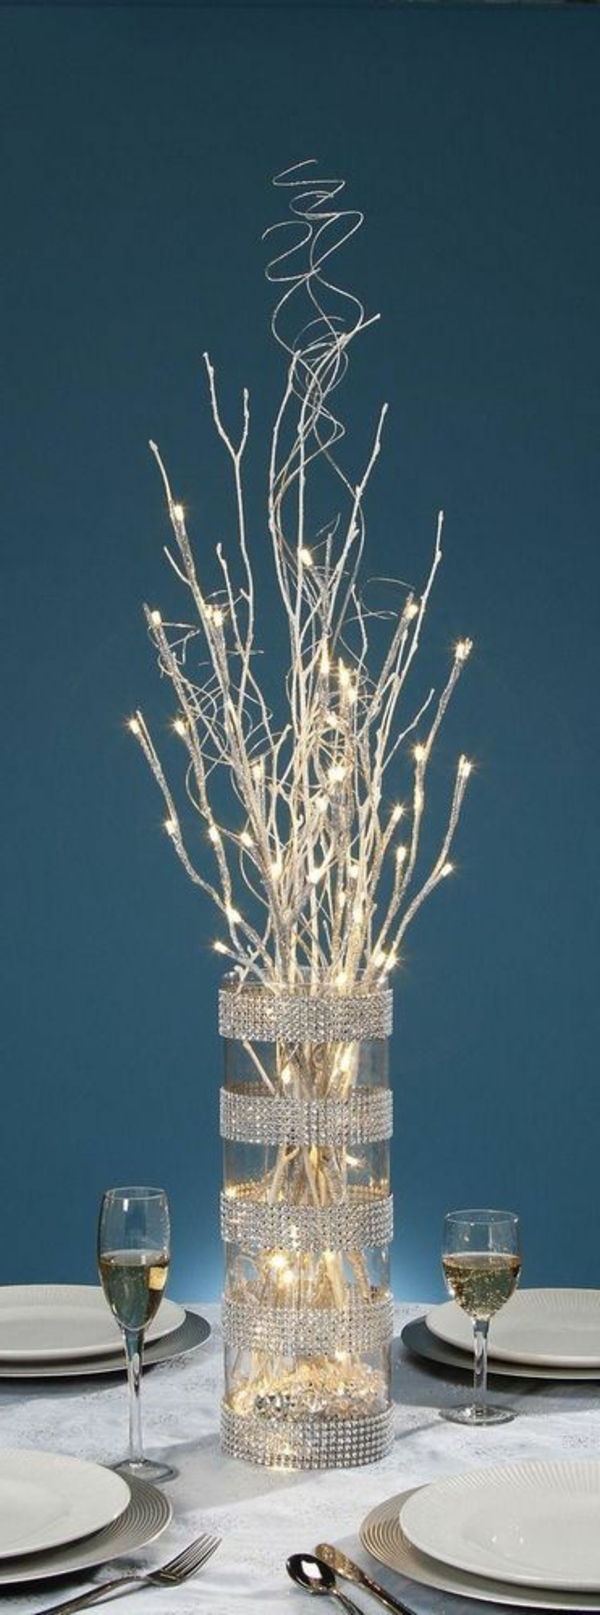 hvit juledekorasjon - en vase med hvite kunstige grener i den